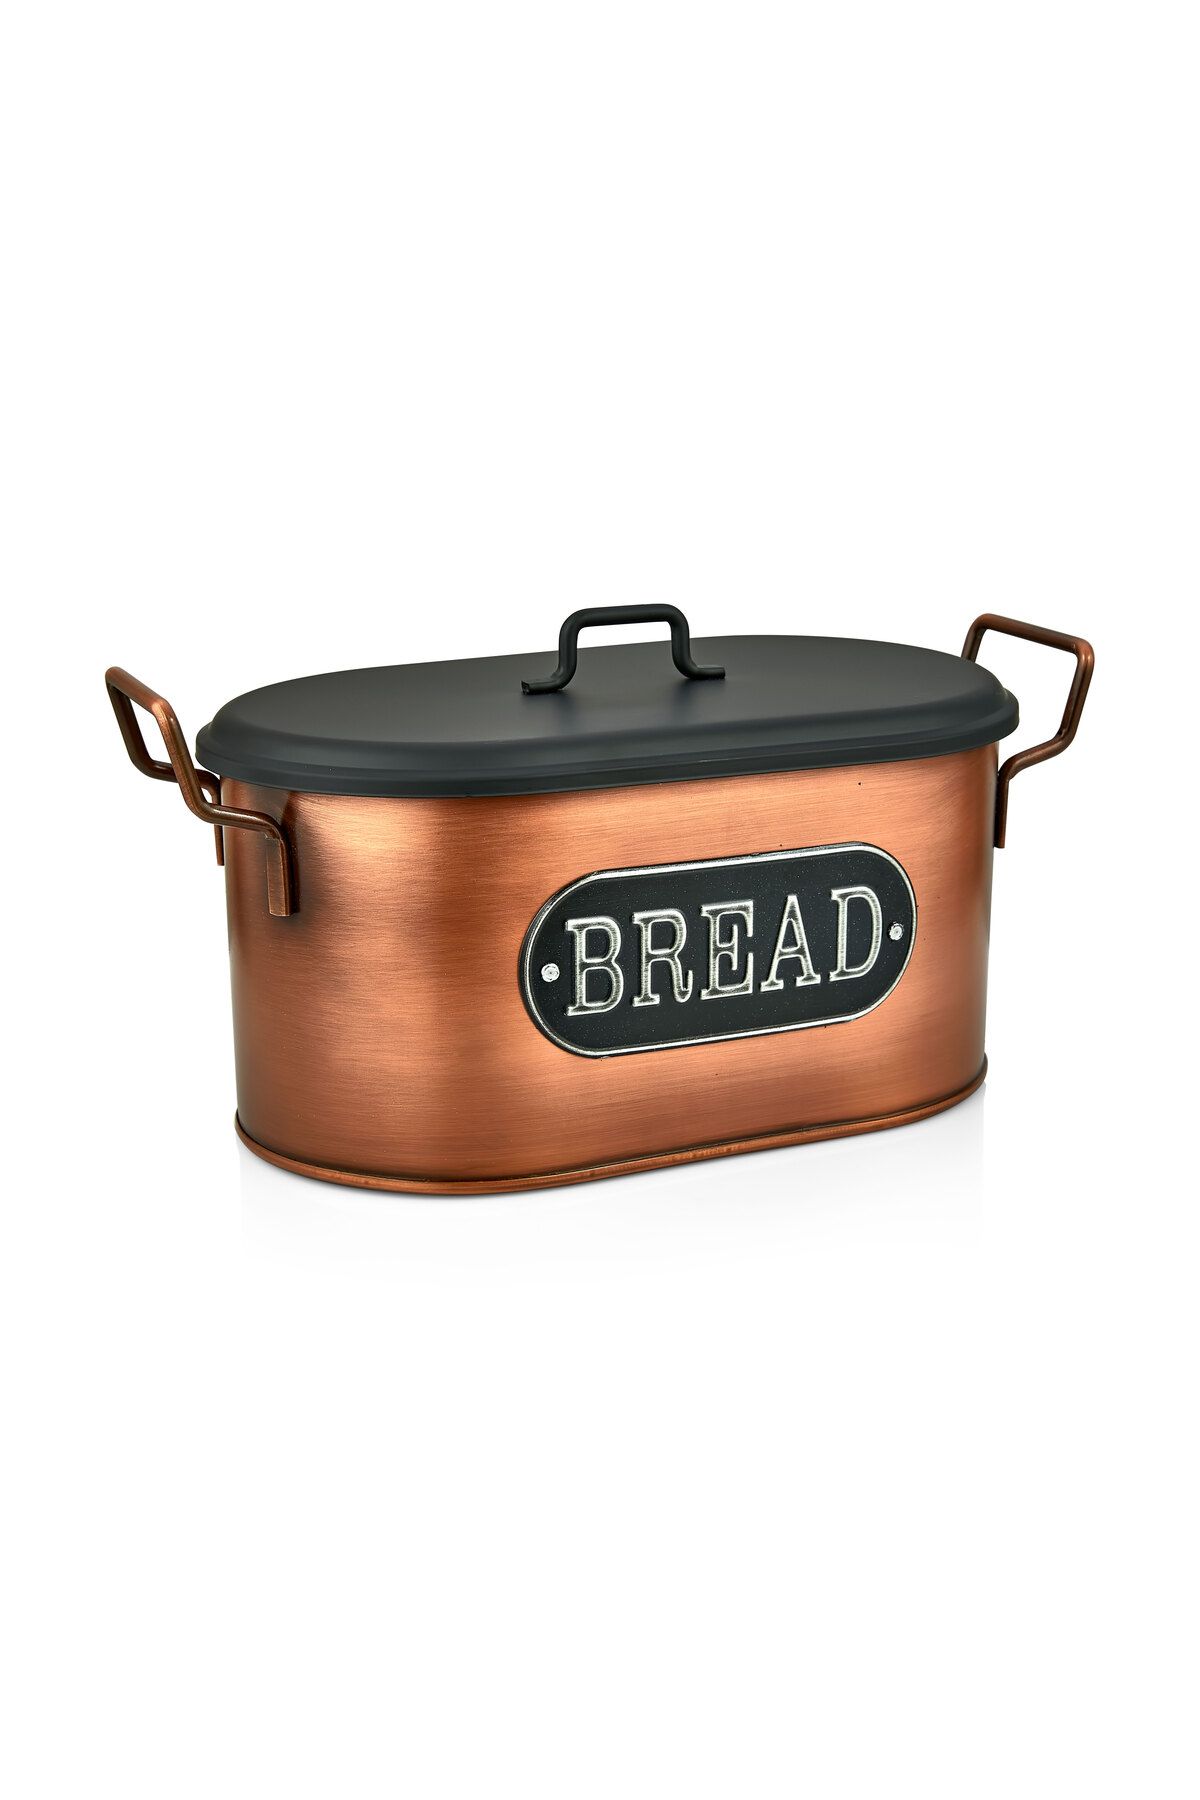 LUCKYHOMES Özel Üretim Galvaniz Metal Kapaklı Ekmek Kutusu 38X16 Cm , Metal Ekmeklik Bakır,Gold Kaplama